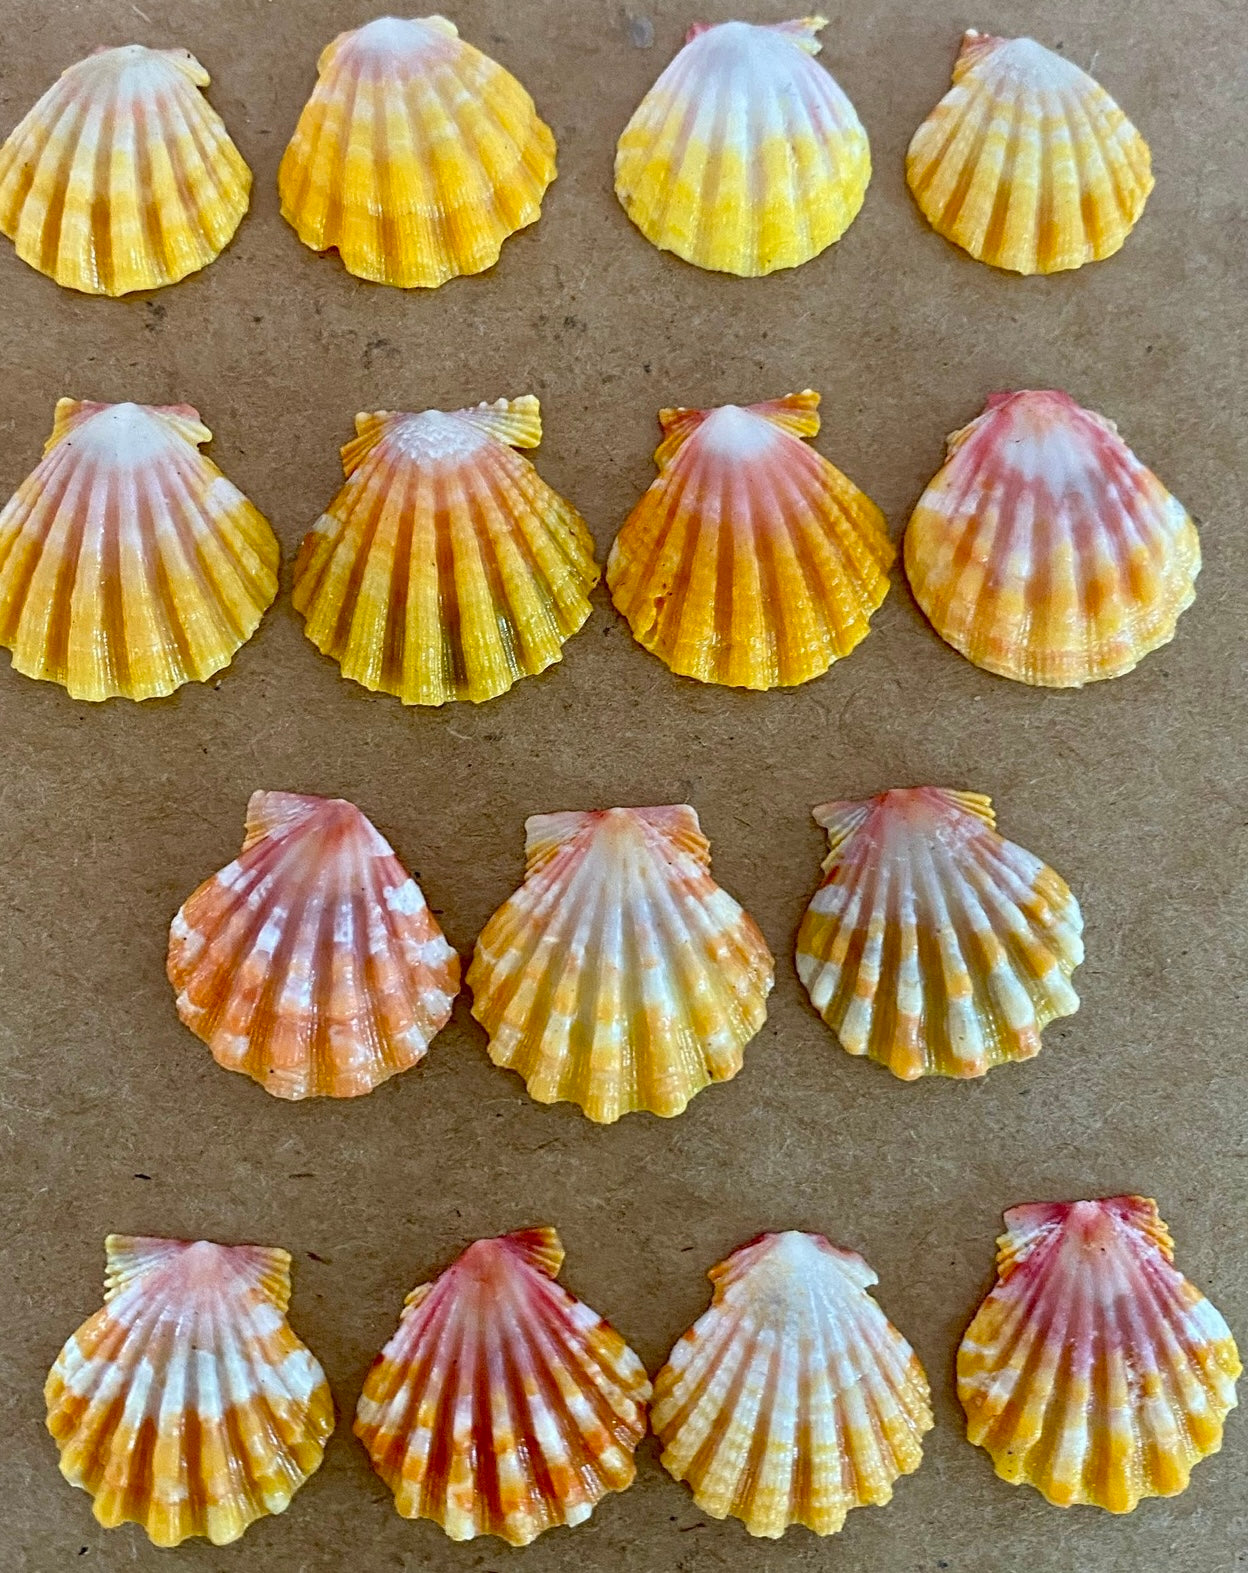 Sunrise Shell Necklace